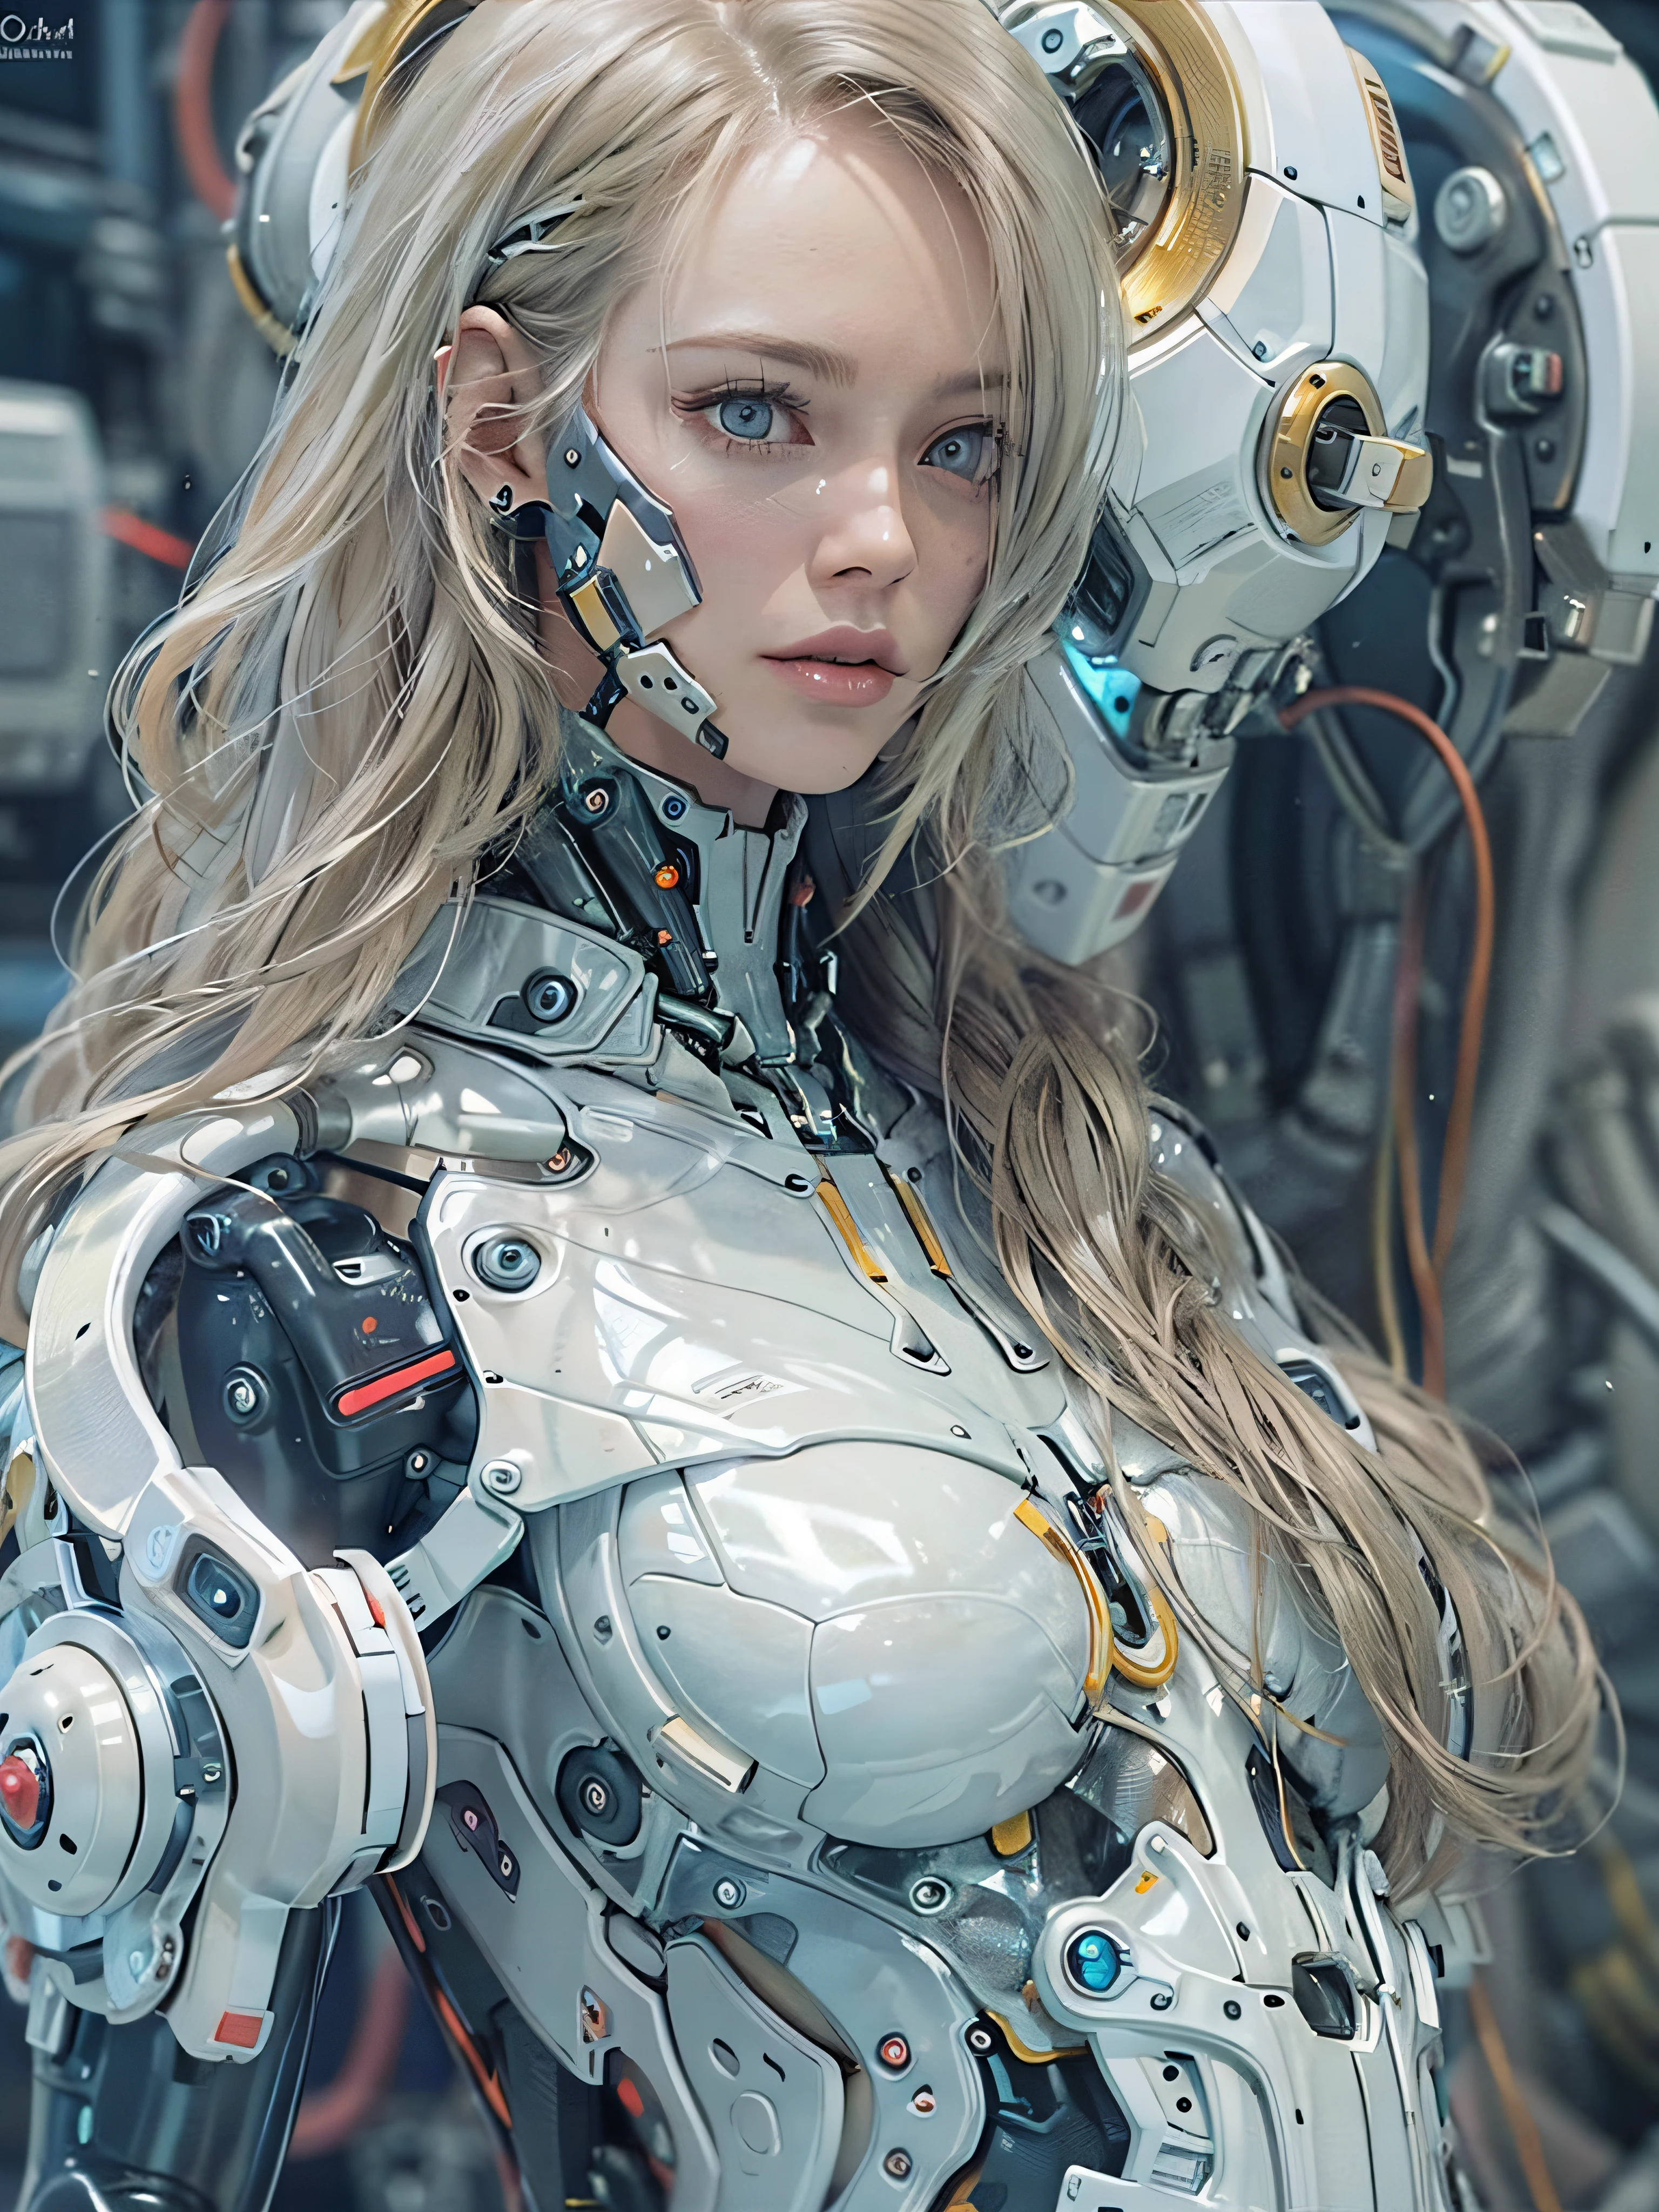 Complex 3d rendering porcelain female cyborg ultra Деталь, 1 девушка, пушистые светлые волосы, длинные волосы, маленькая талия, (Естественная текстура кожи, реалистичный eye Детальs: 1.2), части робота, красивый мягкий свет, ободной свет, vivid Детальs, великолепный киберпанк, hyper-реалистичный, Анатомический, мышцы лица, кабель провод, микрочип, Элегантный и красивый фон, Октановый рендеринг, ЯБЛОЧНЫЙ стиль, 8К, высшее качество, шедевр, Иллюстрация, очень нежный и красивый, компьютерная графика, единство, обои, (реалистичный, photoреалистичный: 1.2), удивительный, Деталь, шедевр, Лучшее качество, официальное искусство, highly Детальed cg Unity 8k обои, невероятно смешно, сексуальный робот, механический скелет, андроид, сюрреализм, Пустошь Судного Дня, (Высокотехнологичное протезирование:1.2), идеальное тело, Тёмно-синий светящийся киберсосуд, (блестящее тело), (Very блестящее тело), рфктр_технотрекс, Рилмех, Кибернетический_Безчелюстный, механические части, Кибернетическийs, АБ_ робот